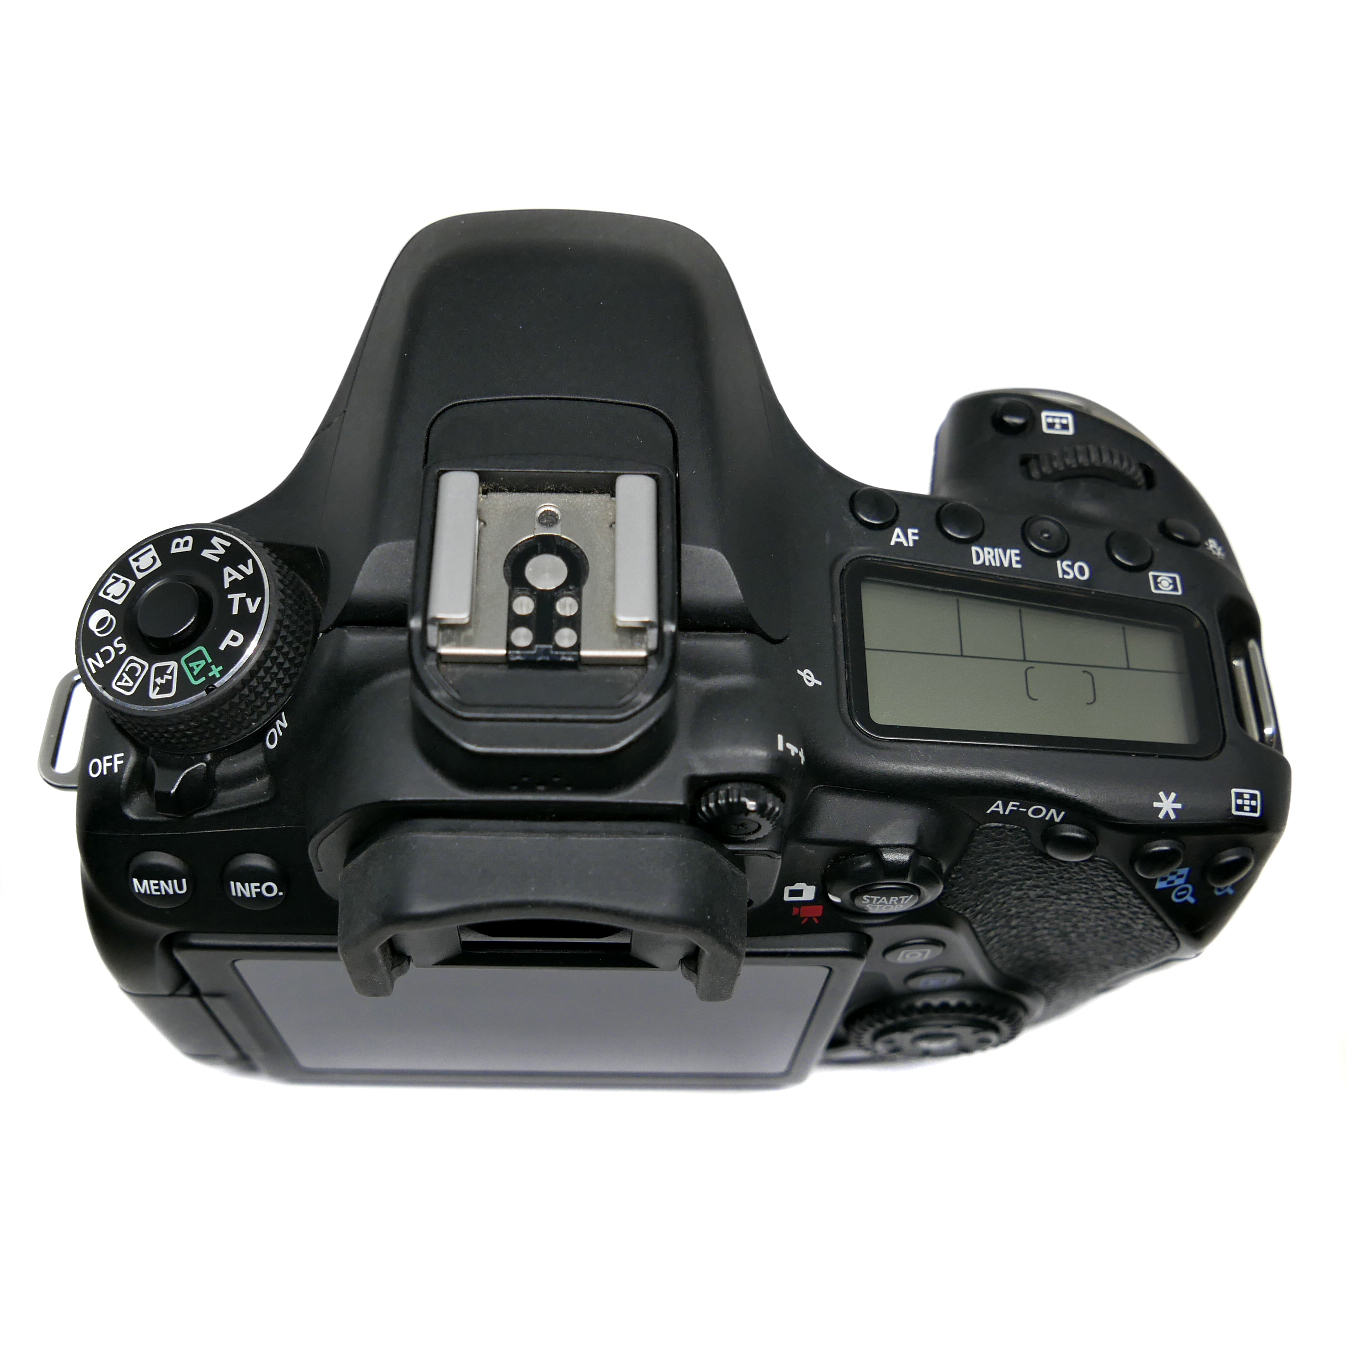 (Myyty) Canon EOS 80D runko (SC:13135) (käytetty)